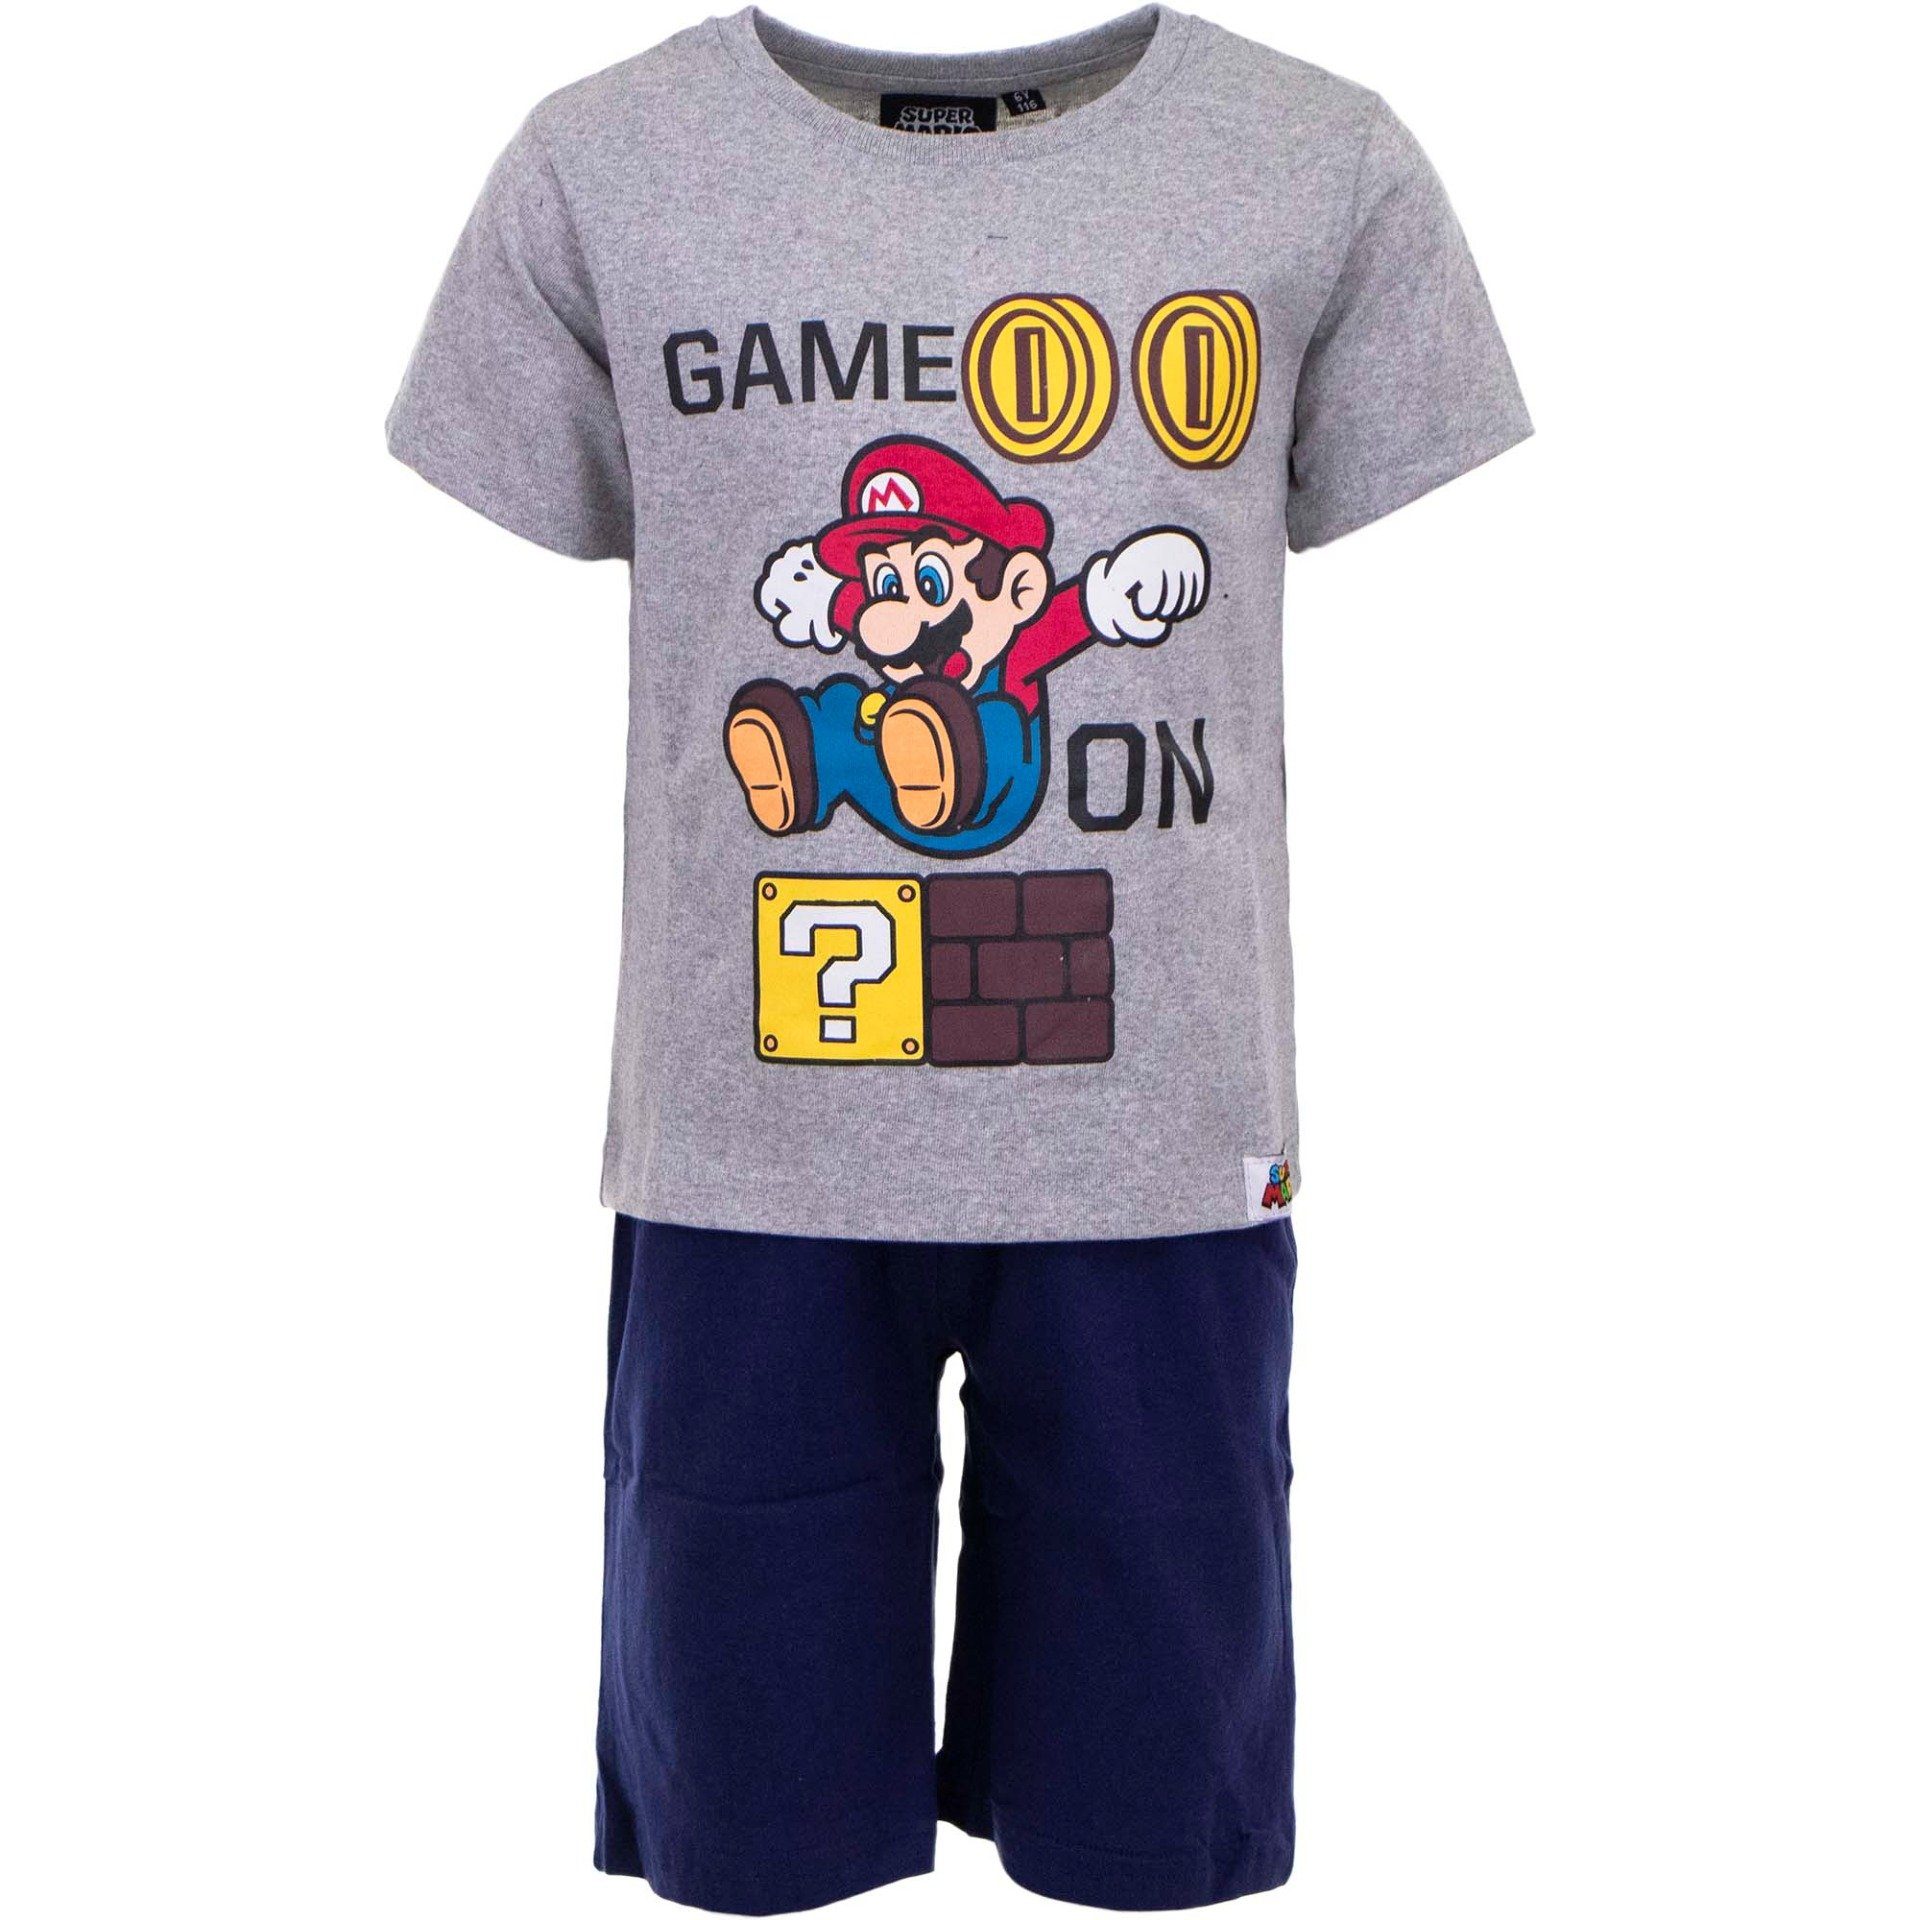 Super Mario Pyjama Game On Jungen Pyjama Gr. 98 bis 128, Baumwolle